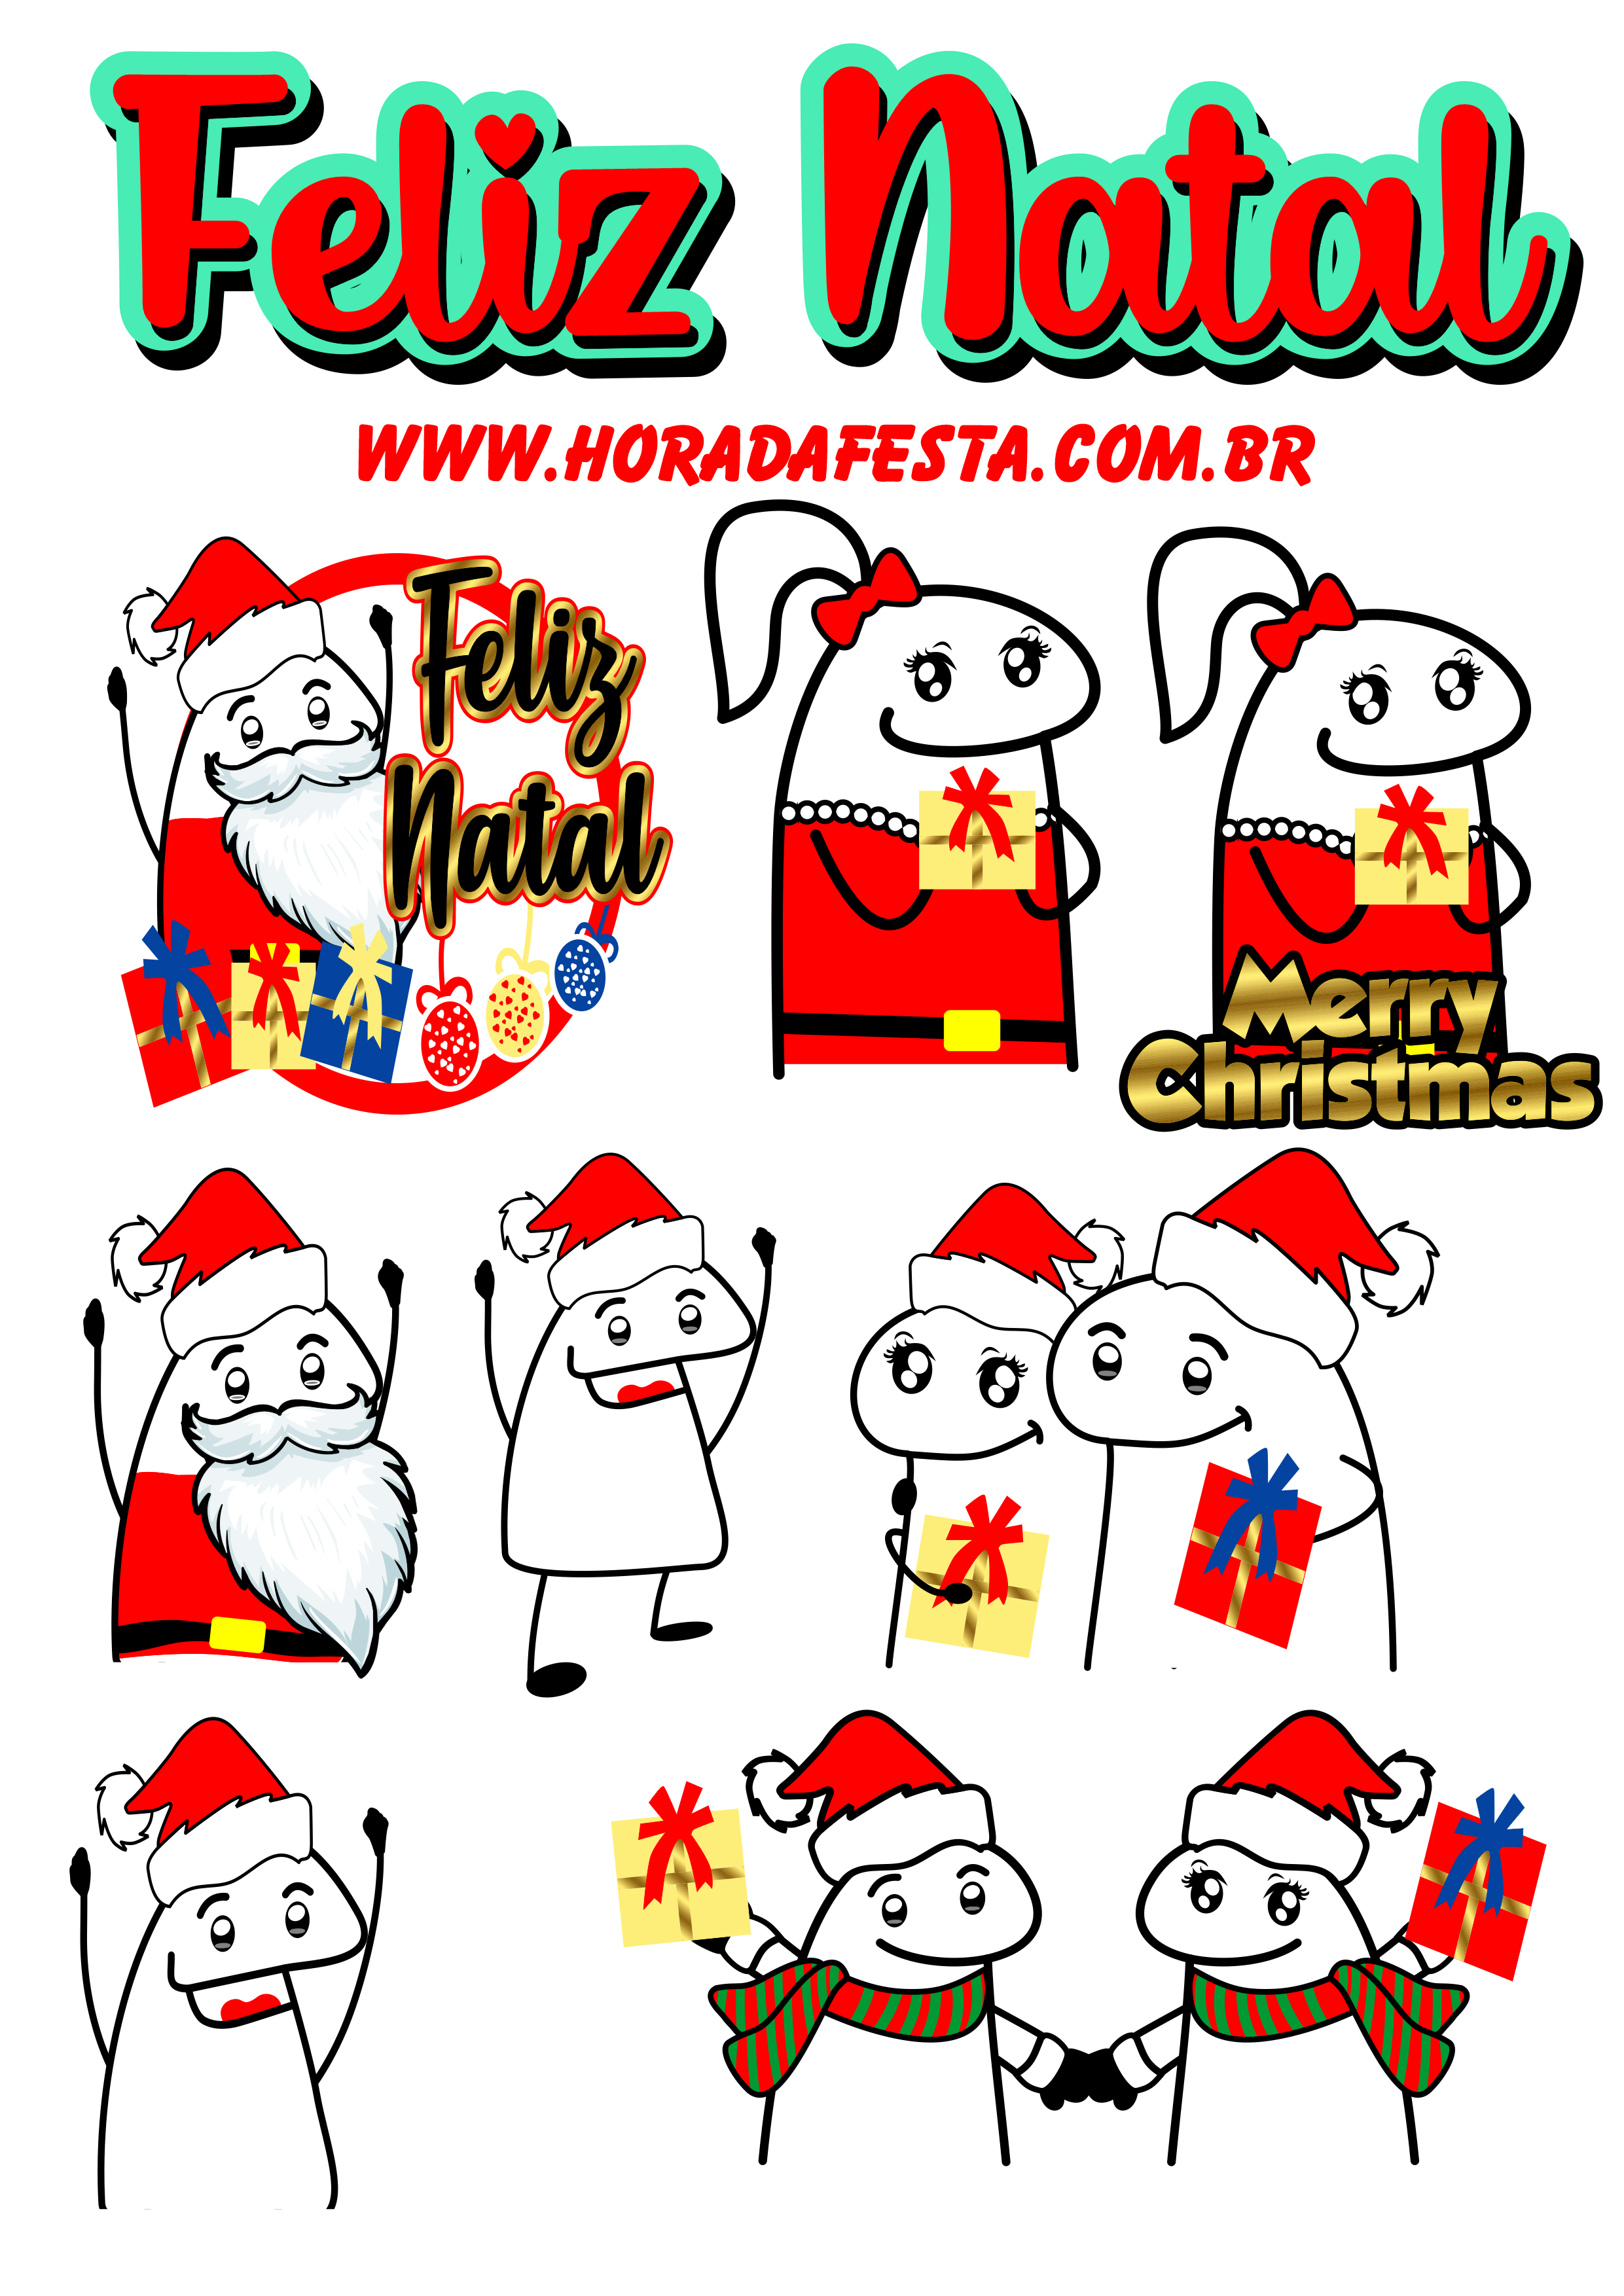 Feliz Natal figurinhas engraçadas para whatsapp flork of cows presente merry christmas papai noel boas festas png